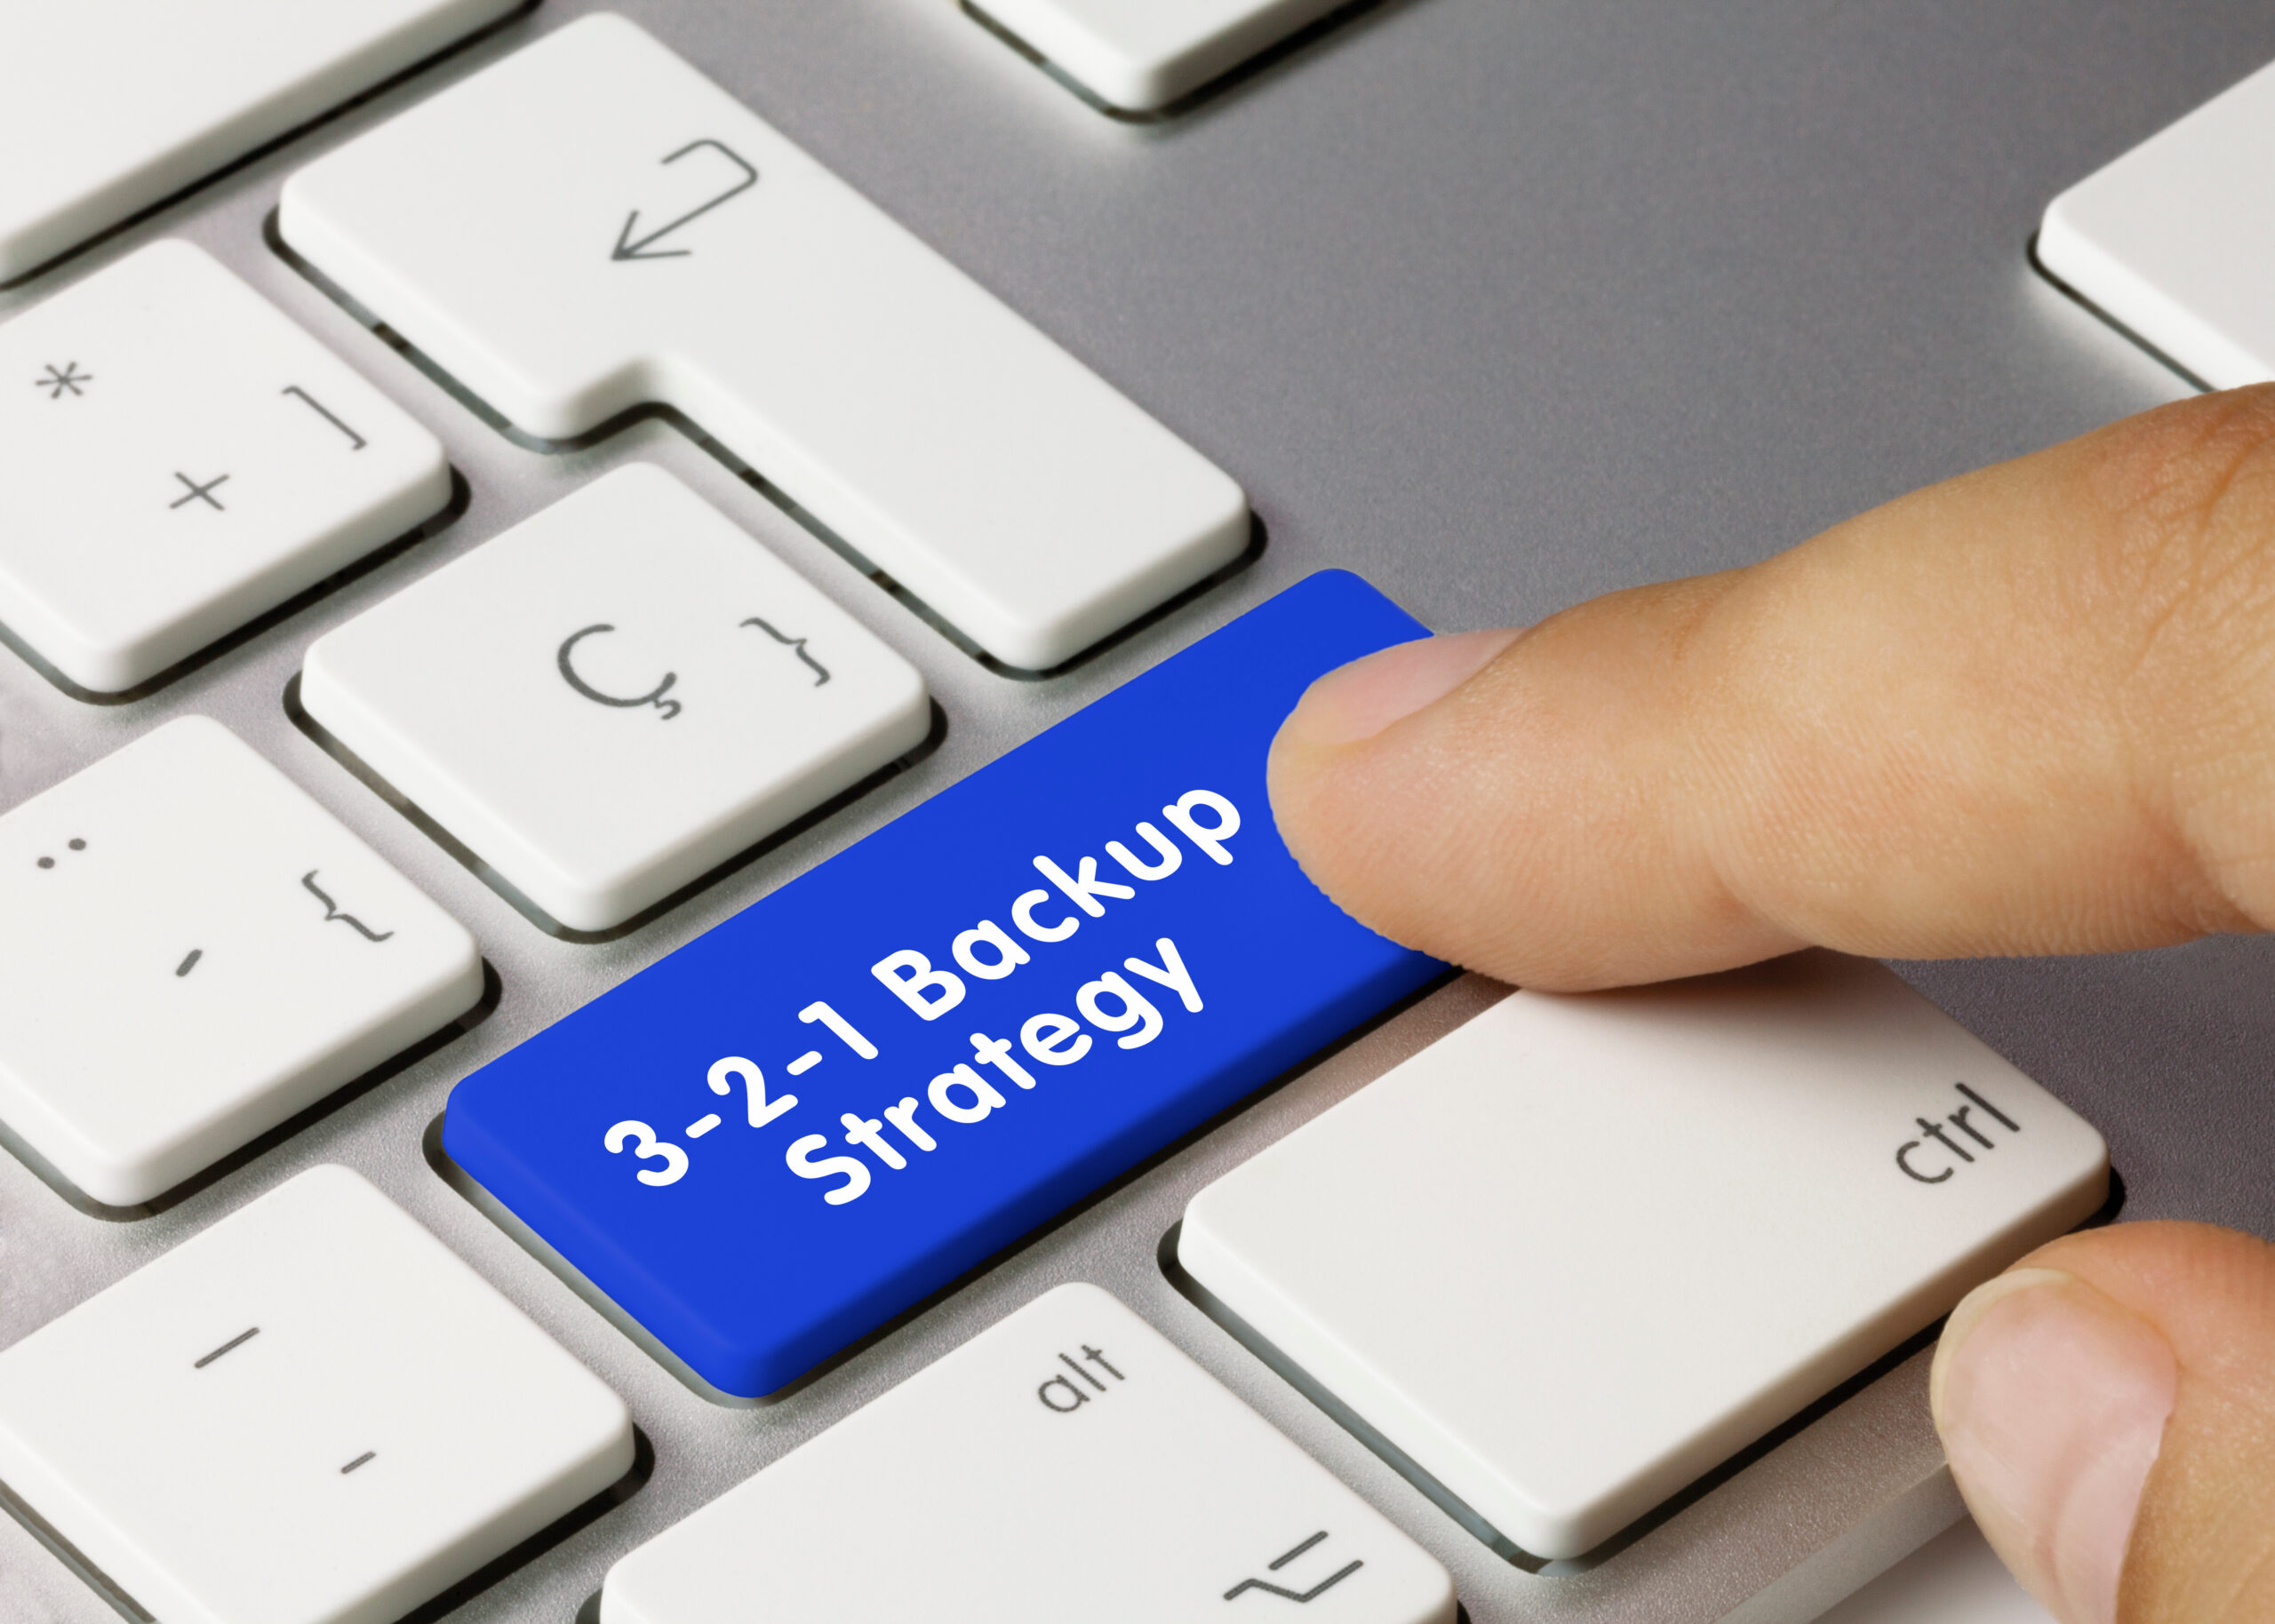 3-2-1 Backup Strategy Written on Blue Key of Metallic Keyboard. Finger pressing key.